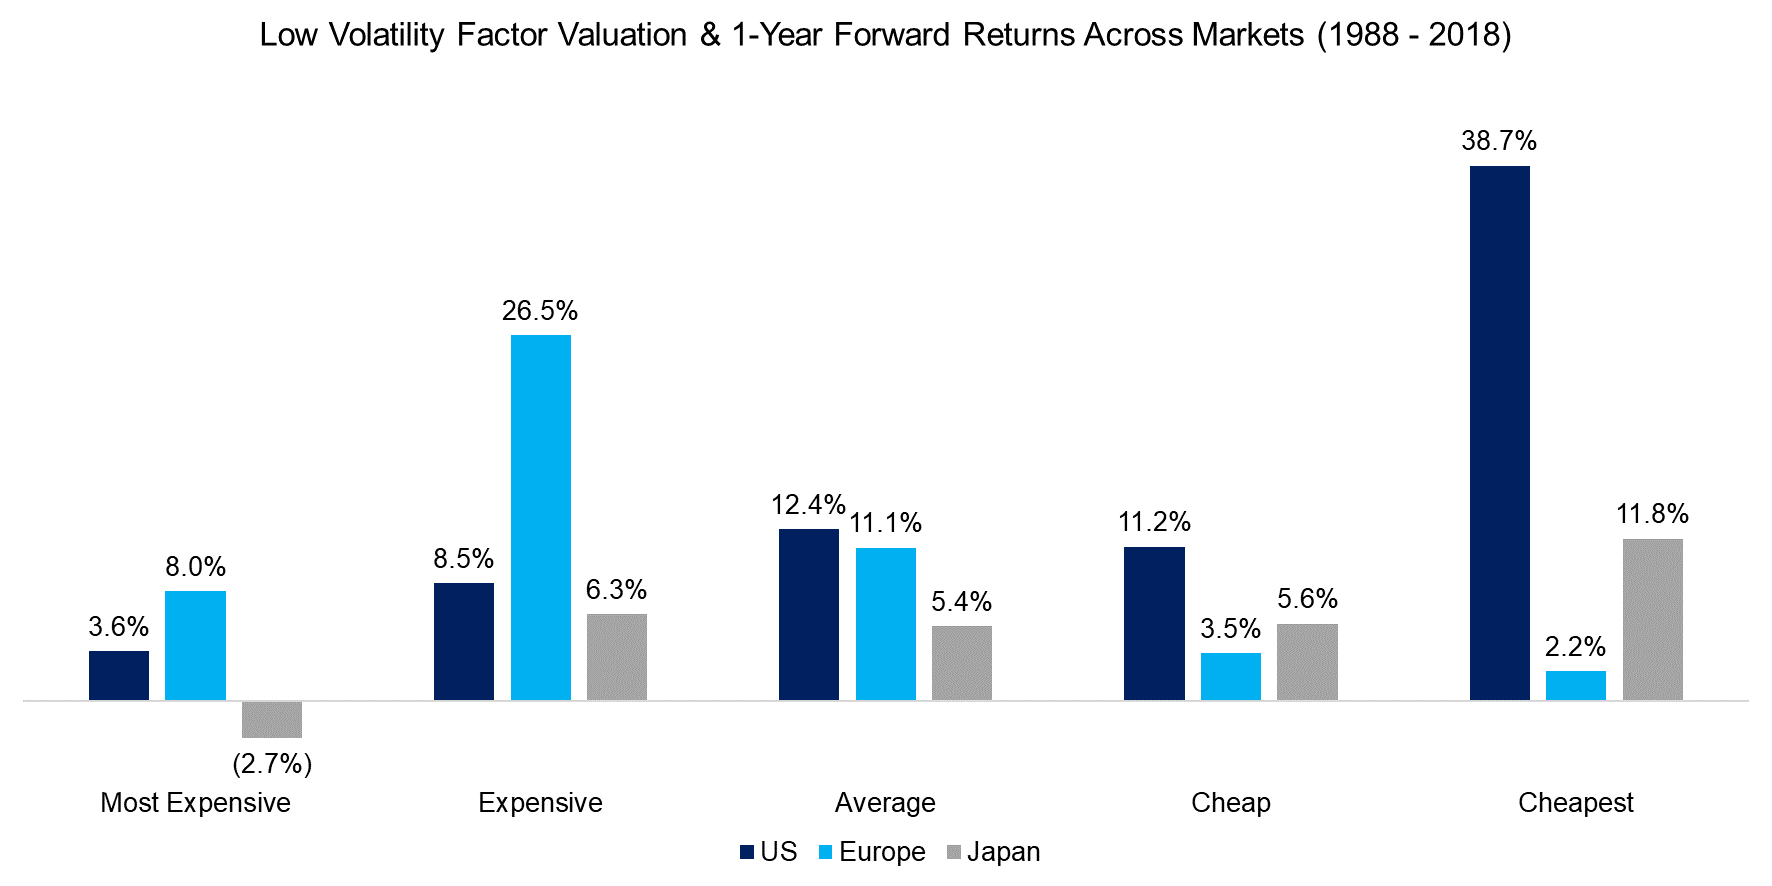 Returns Across Markets (1988 - 2018)